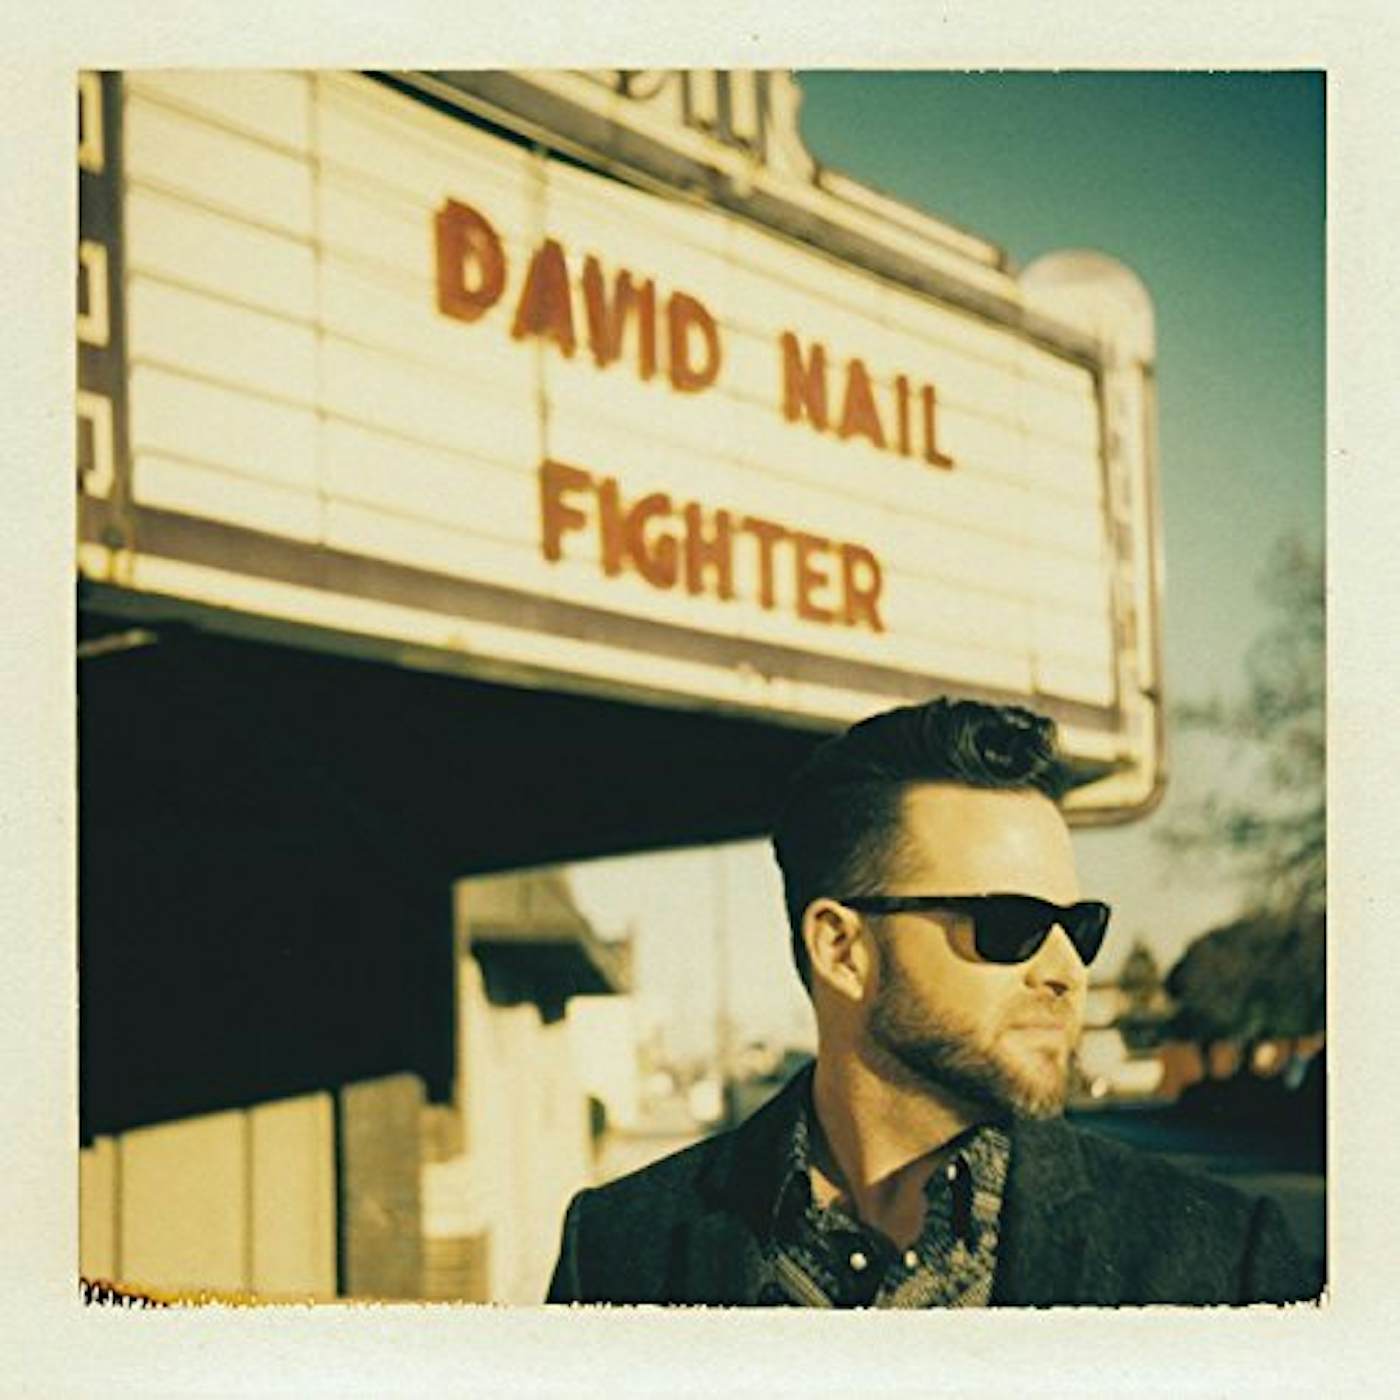 David Nail FIGHTER CD